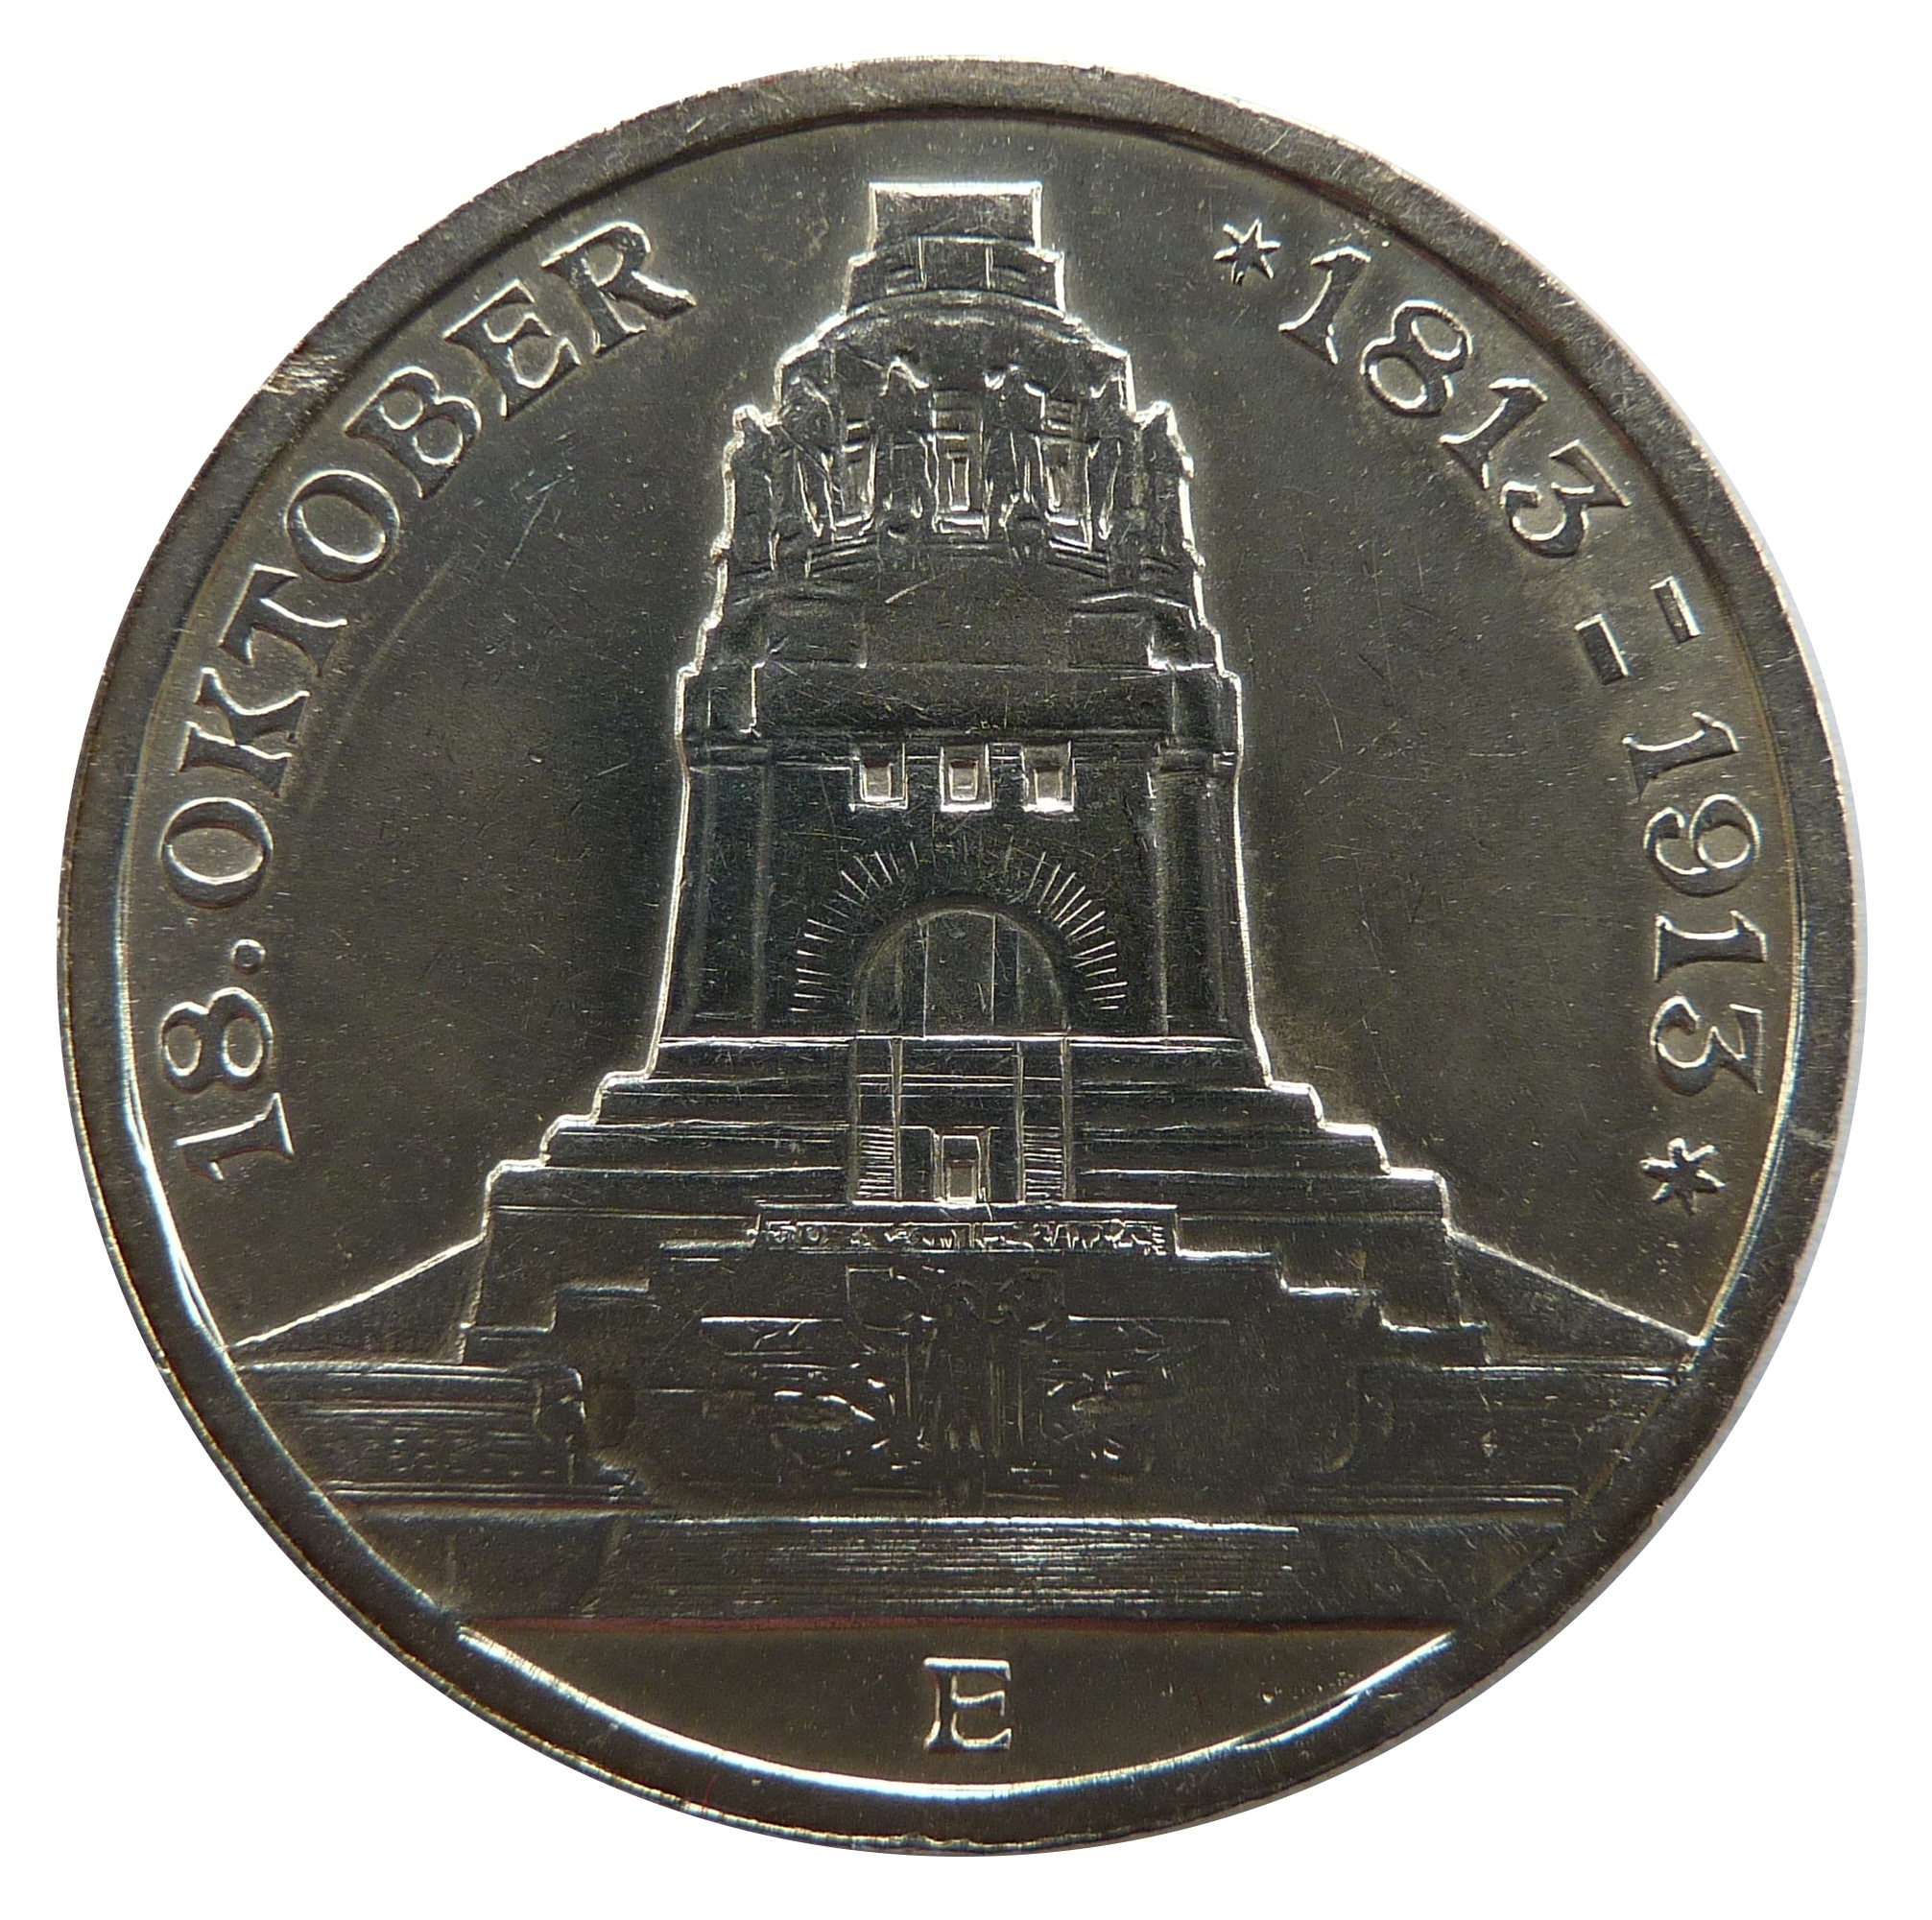 18 oktober 1819-1913 silver round coin